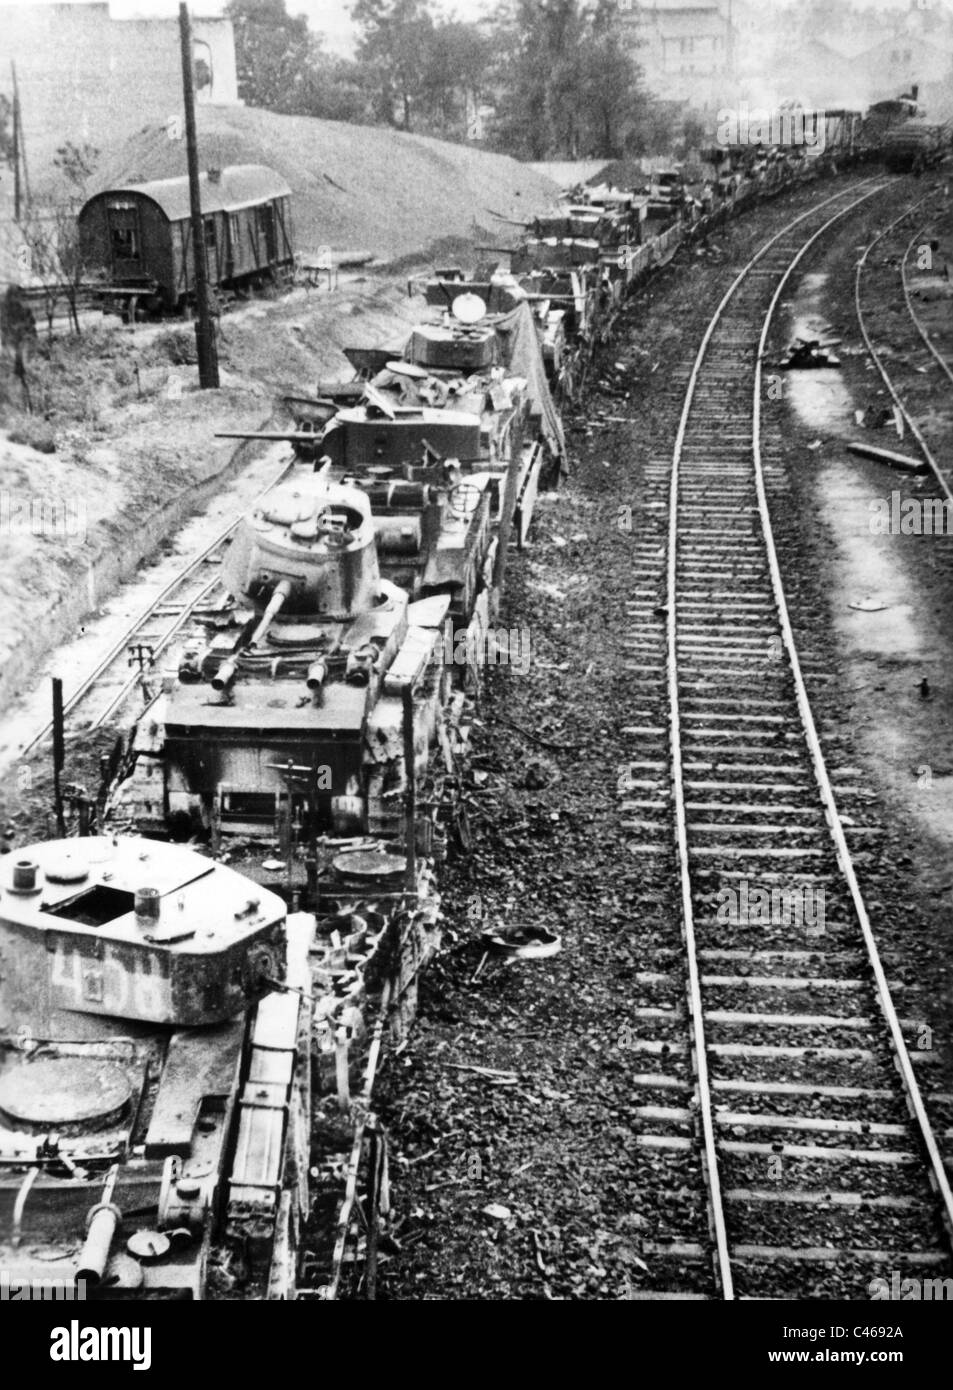 Zweiter Weltkrieg: Rote Armee Panzer zerstört Stockfoto